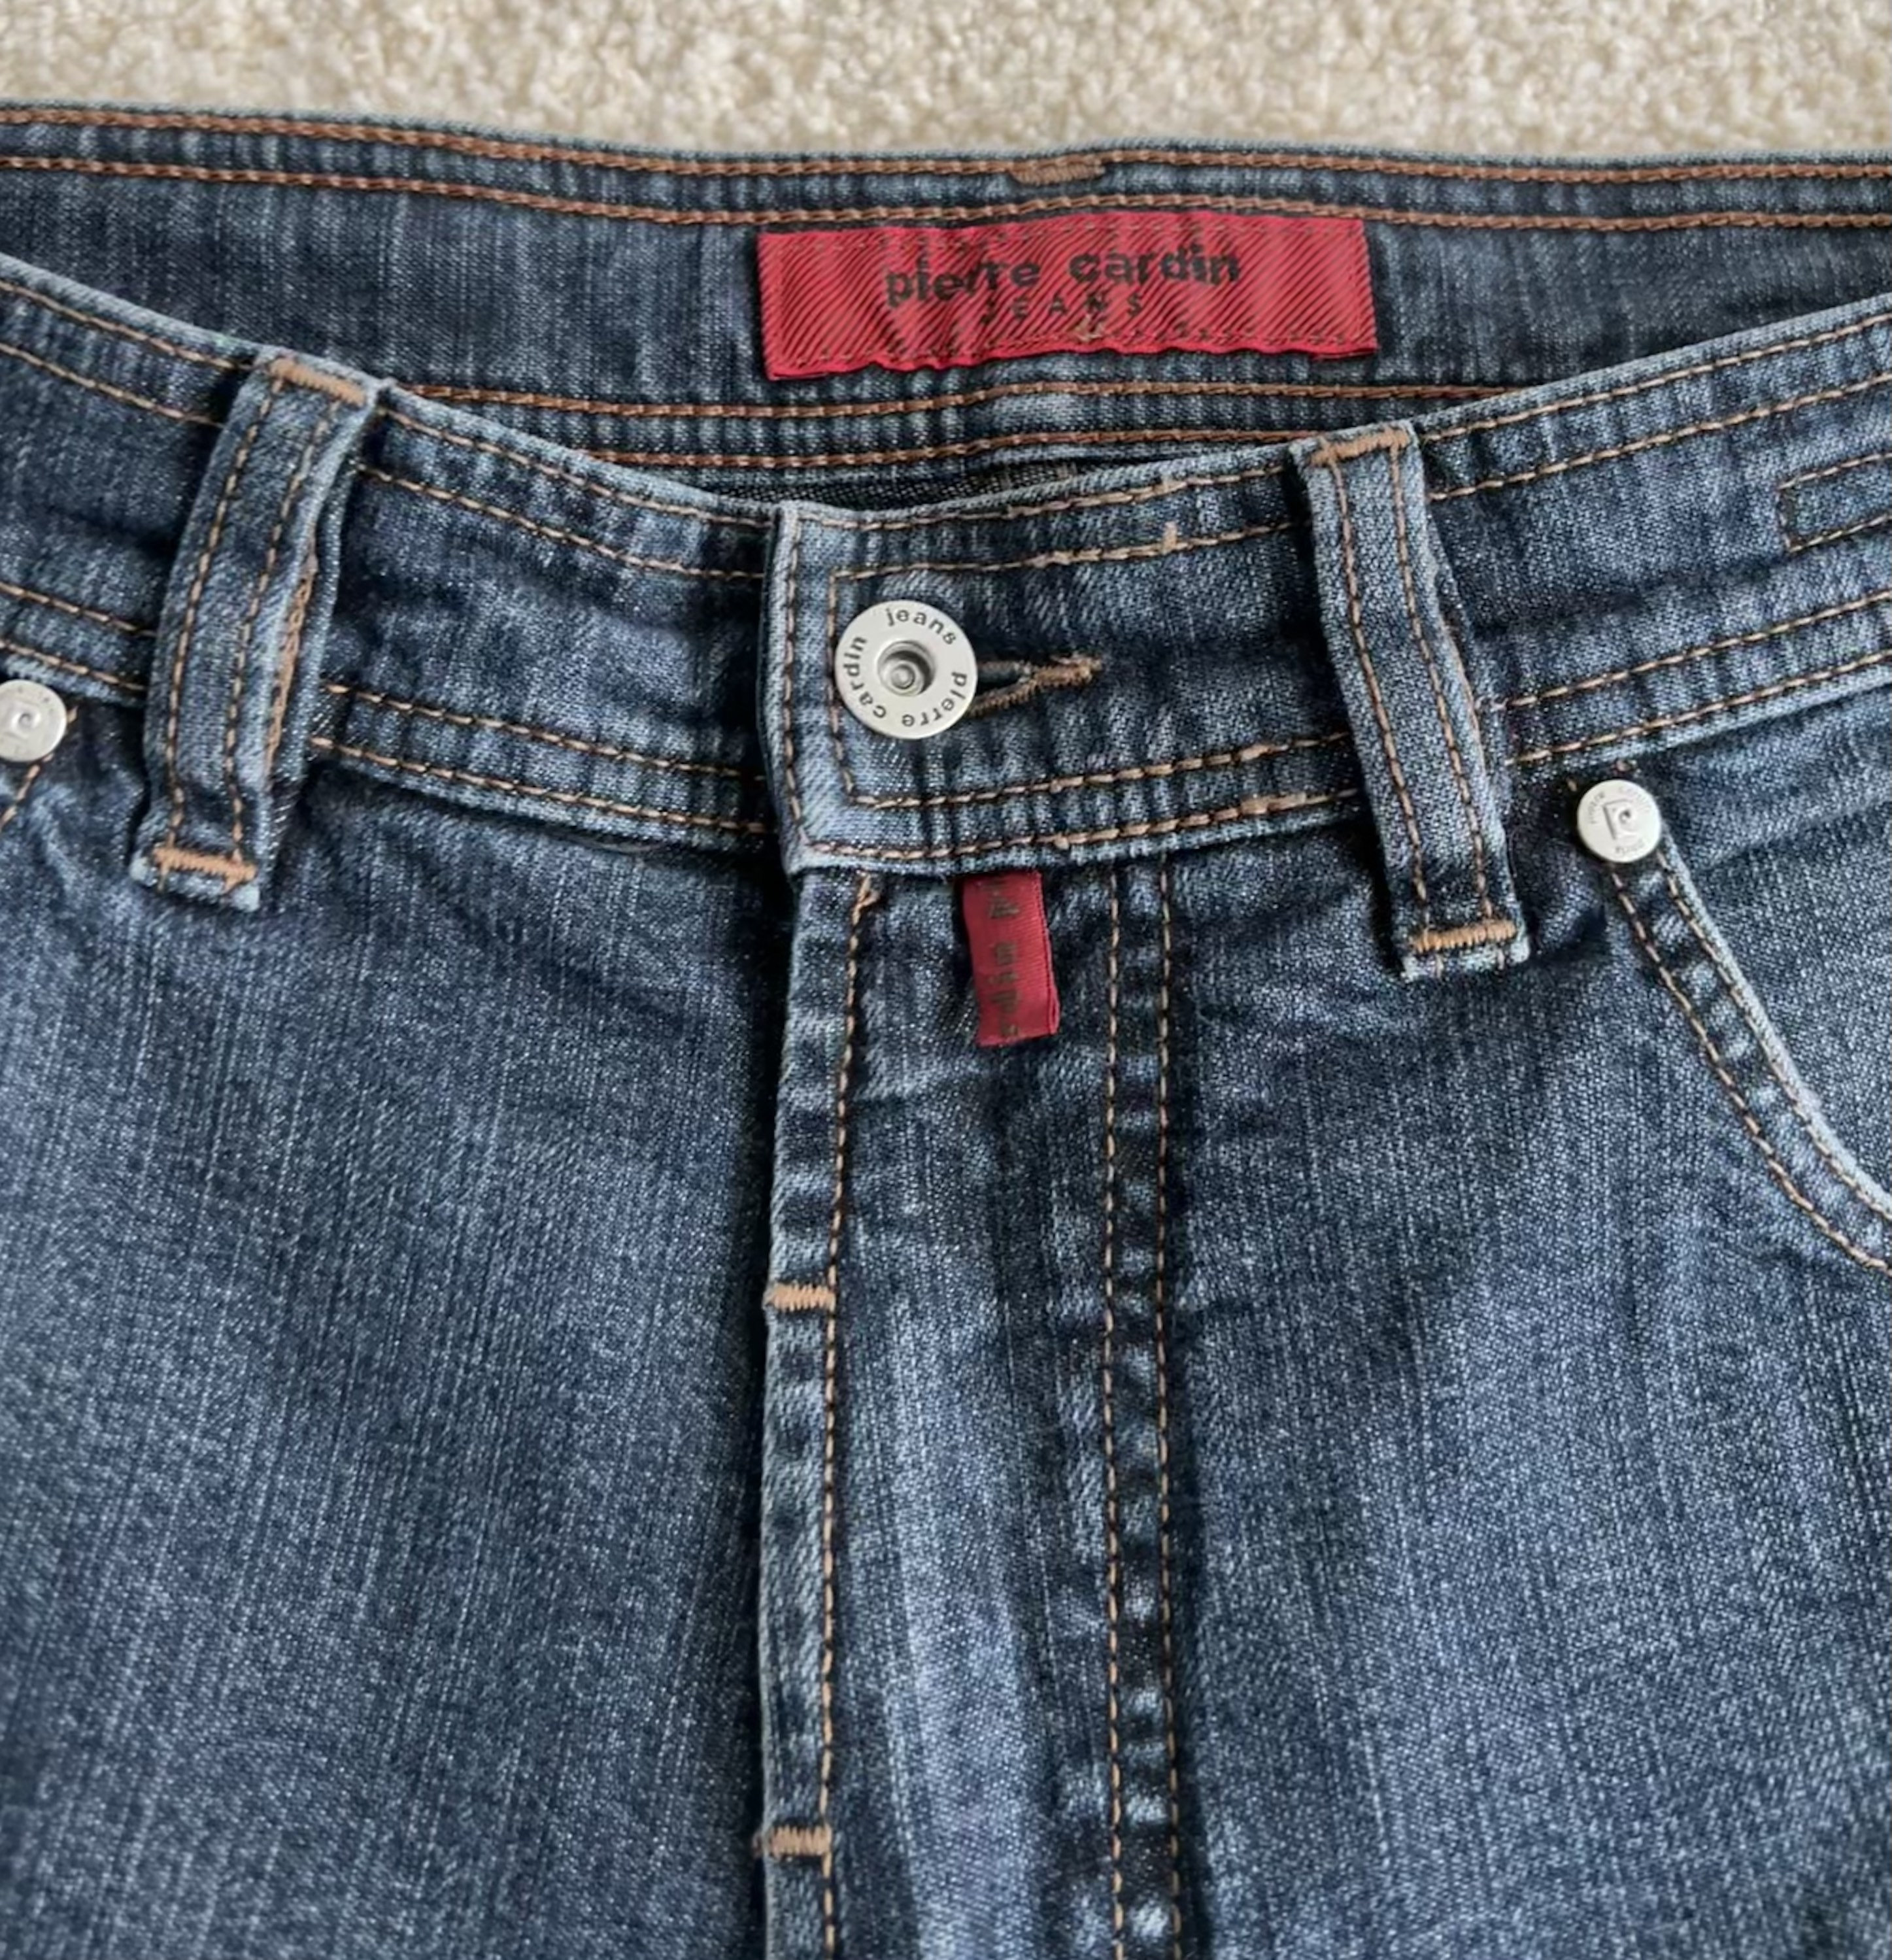 Achtervolging bijvoorbeeld Wrak Pierre Cardin Jeans - Etsy